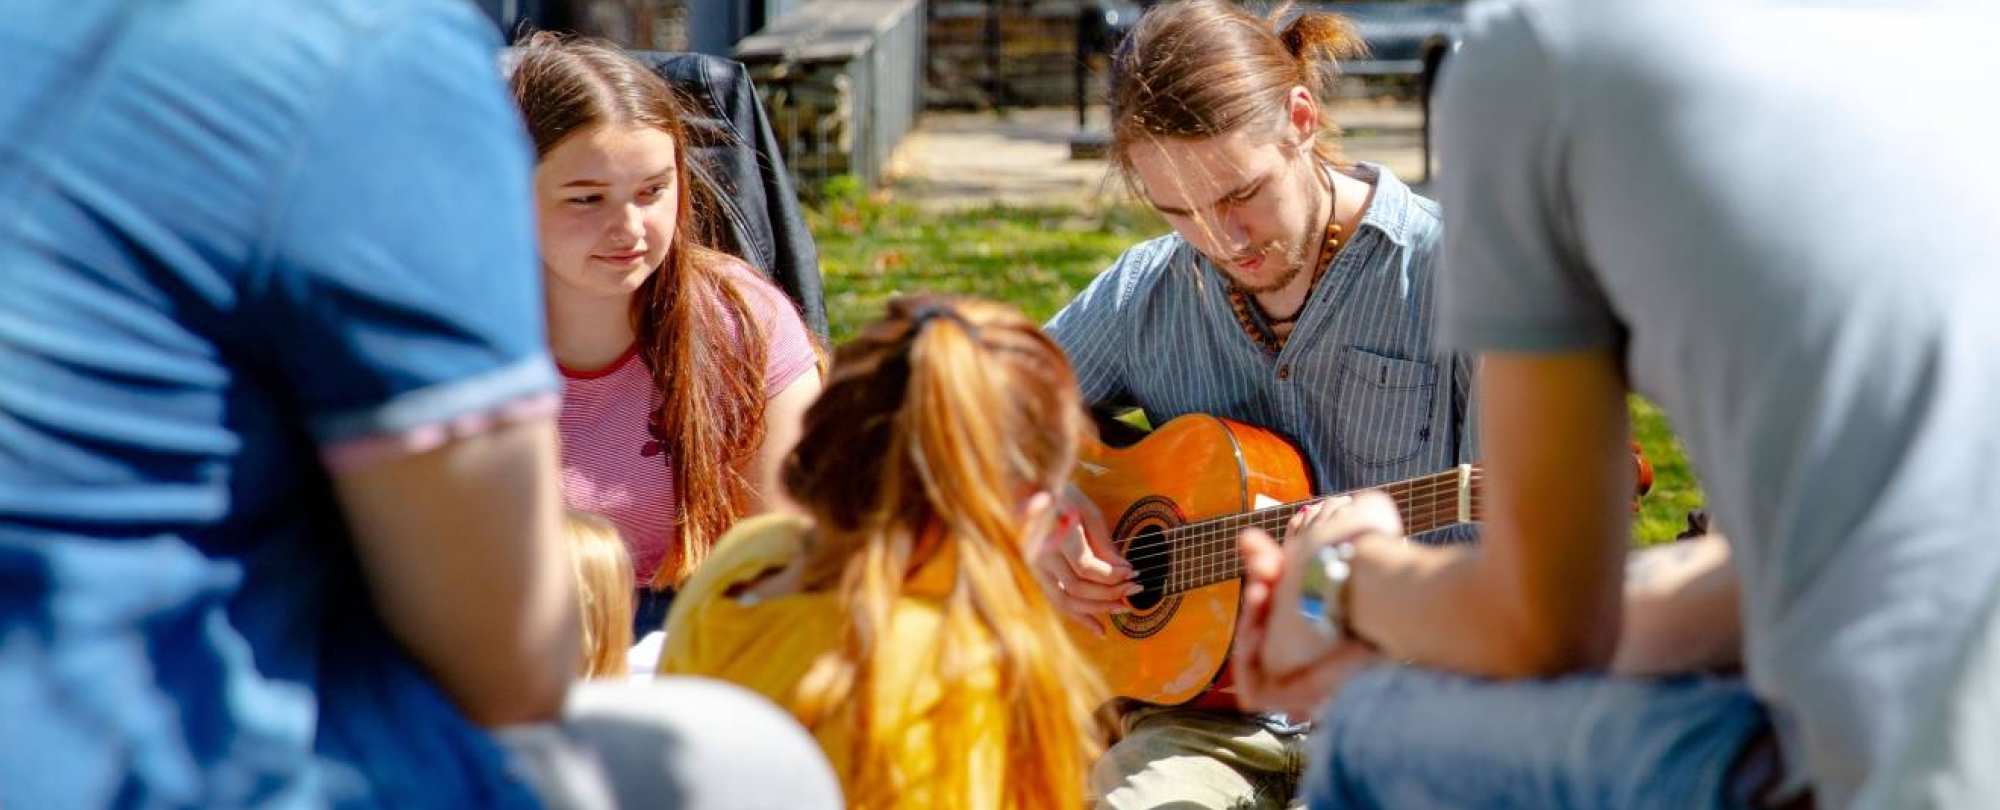 Groep studenten buiten met gitaar